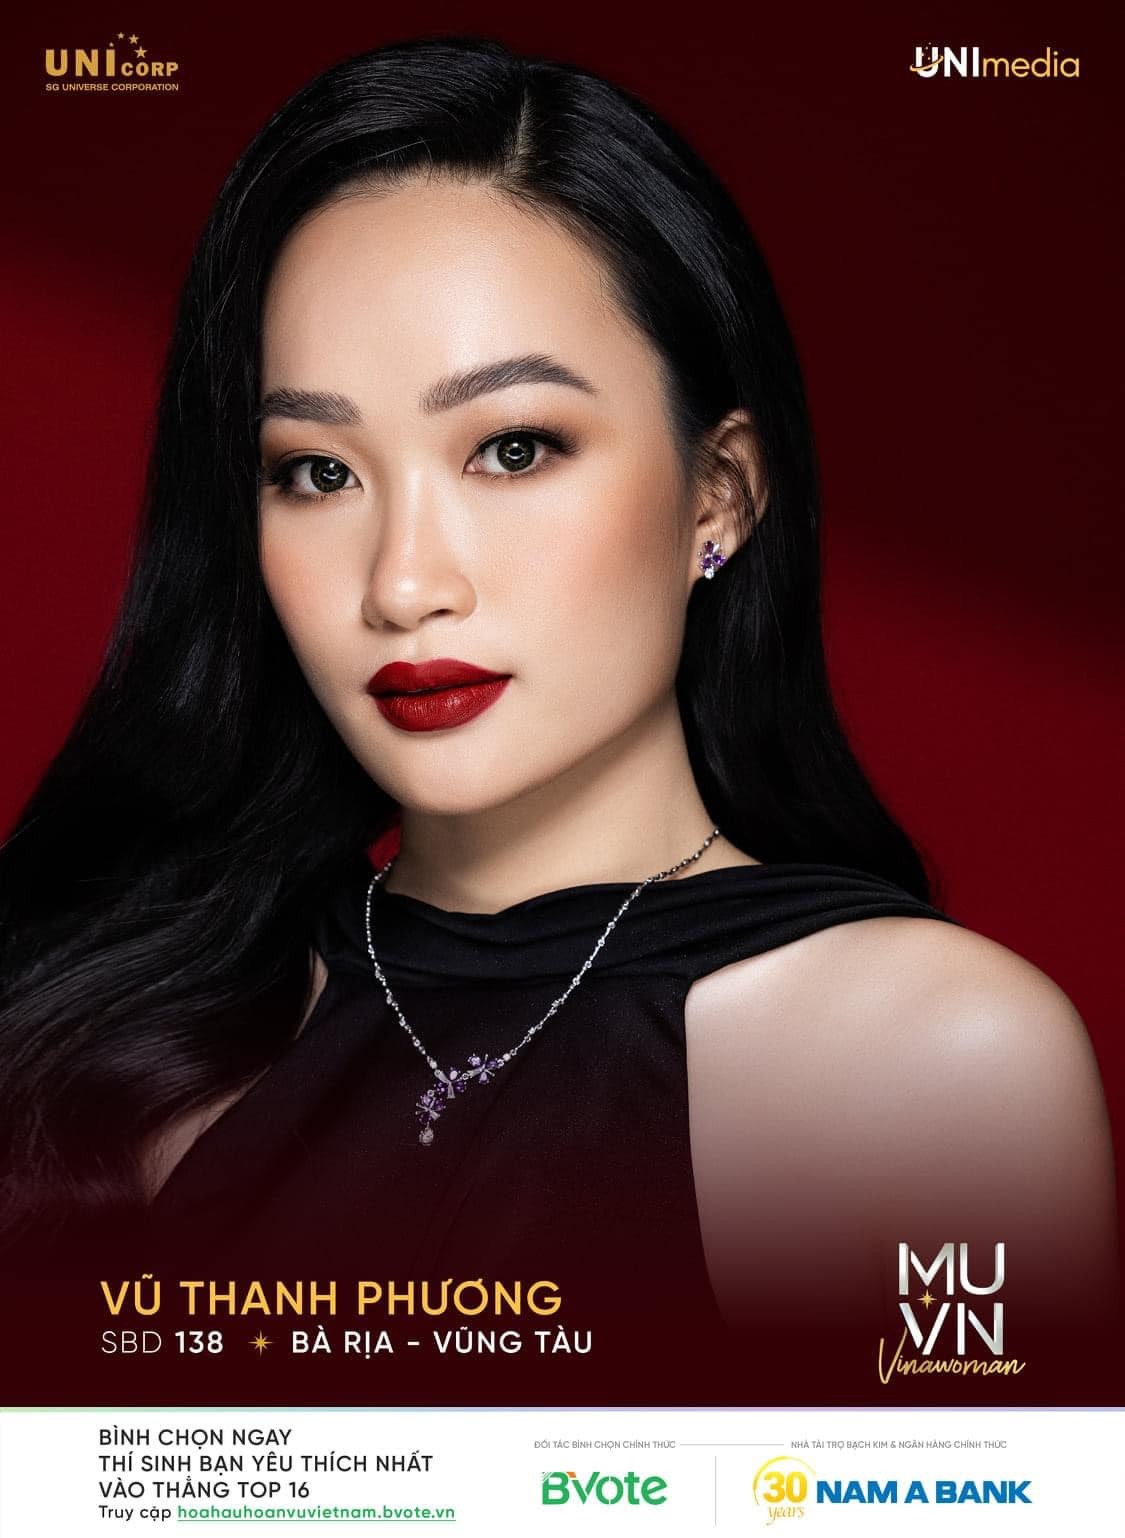 Nguyễn Thị Ngọc Châu - SBD 314 vence miss universe vietnam 2022. - Página 3 VWJC5g